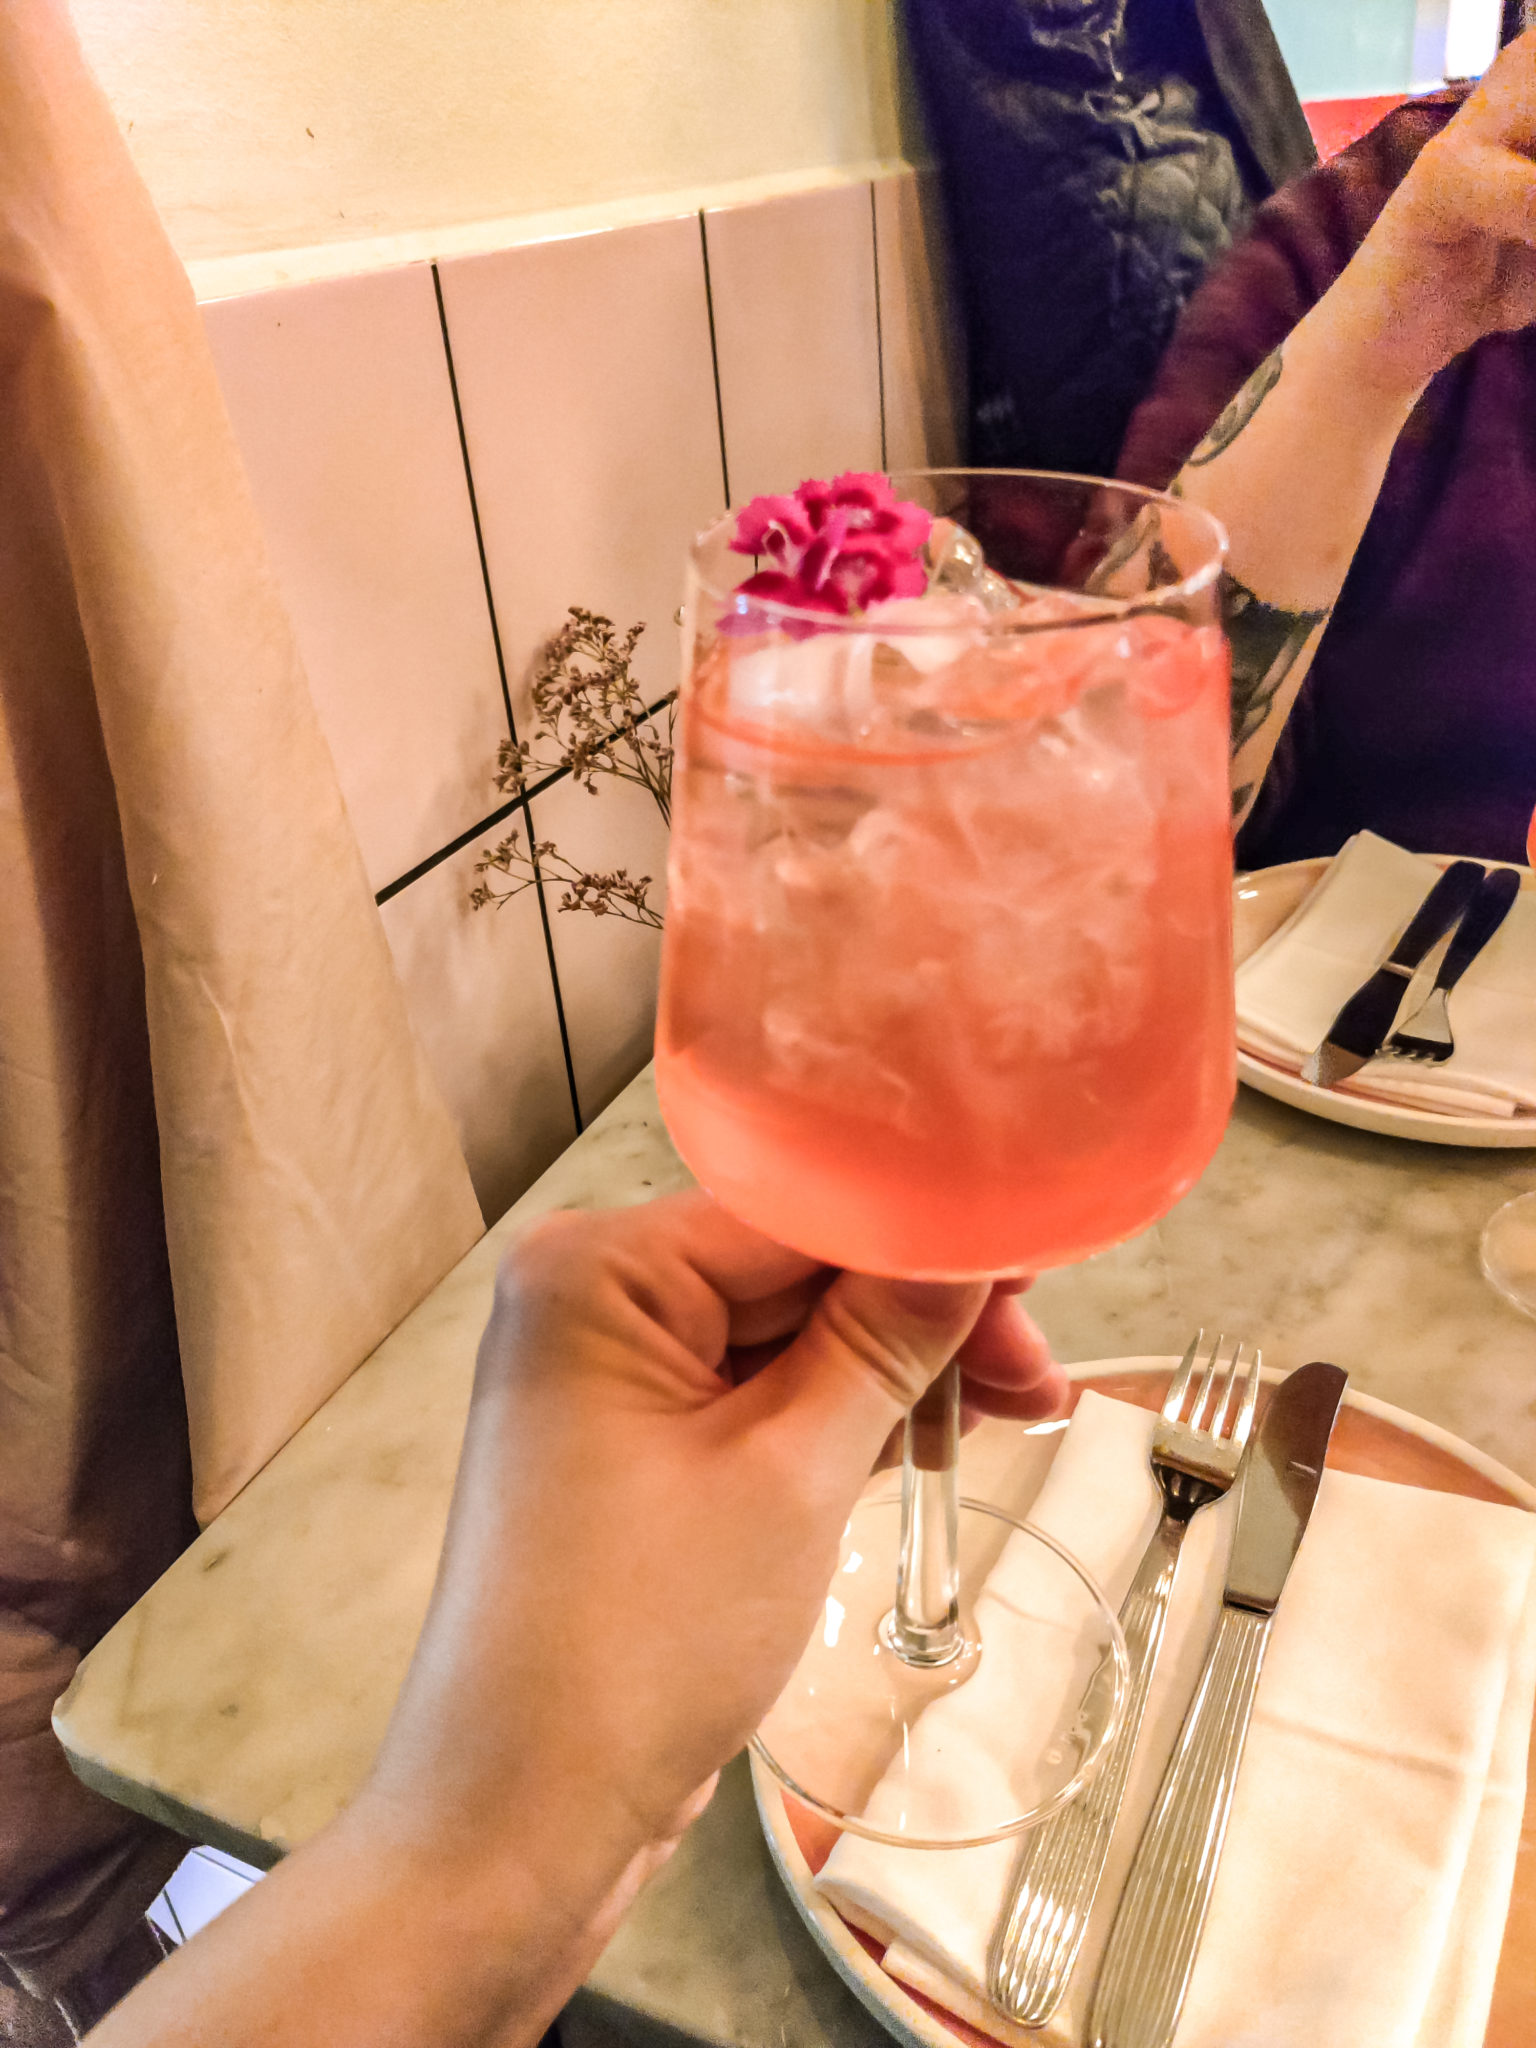 Käsi pitelee korkeajalkaisessa lasissa olevaa punertavaa, kukalla koristeltua juomaa.